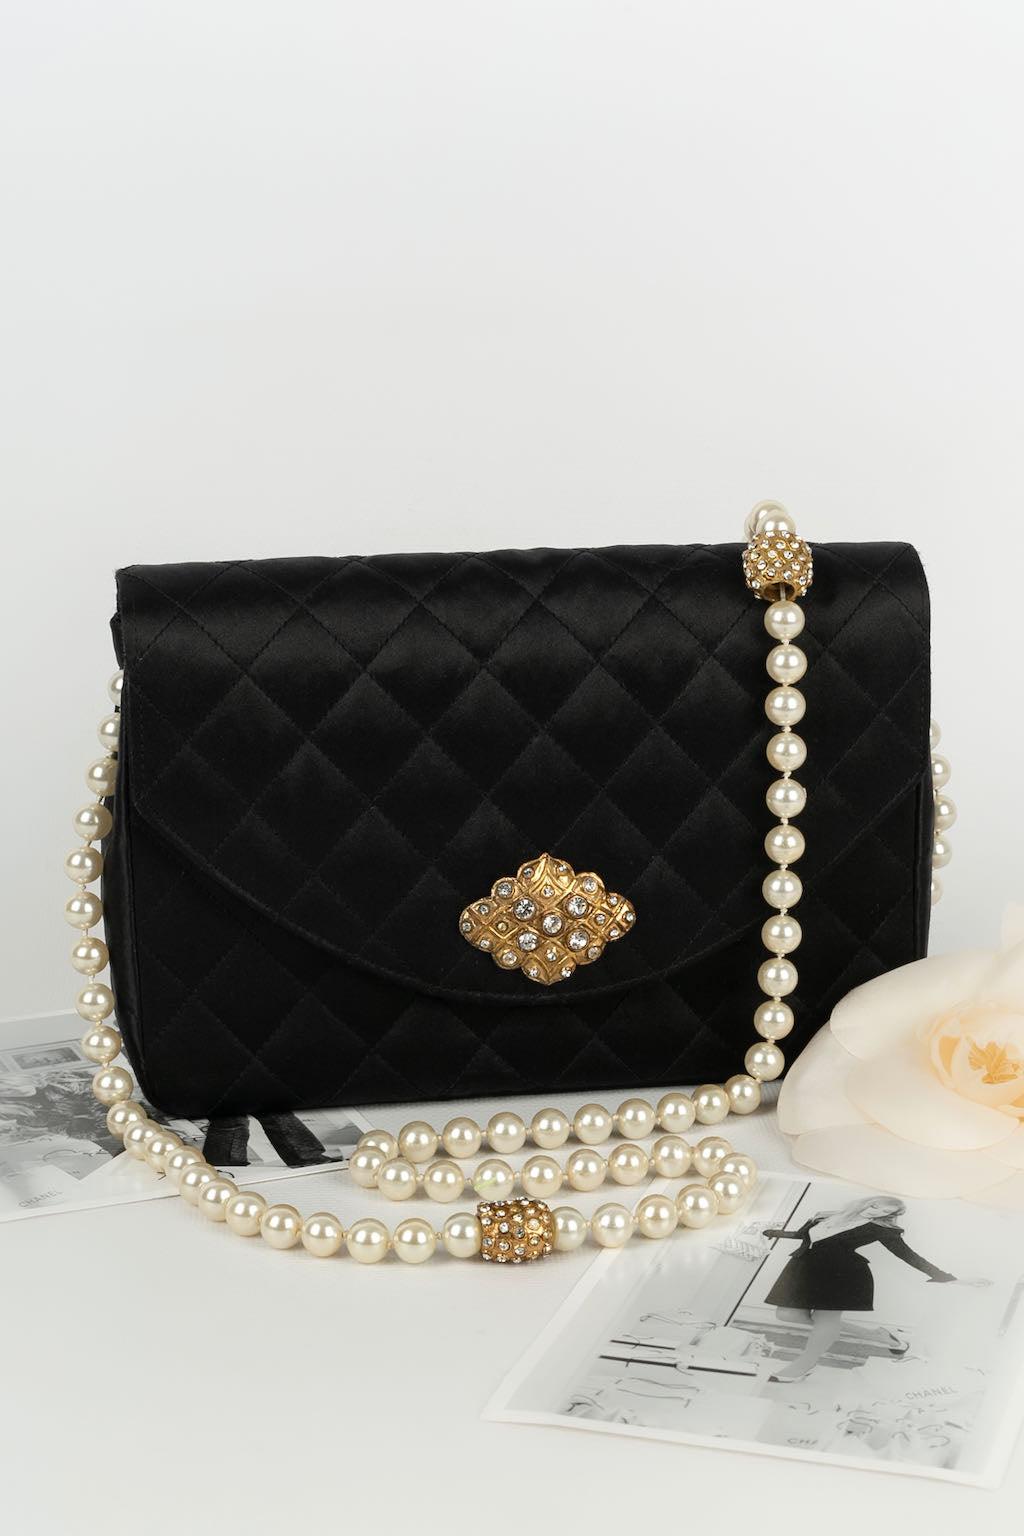 Chanel Jewel Evening Black Bag For Sale 9